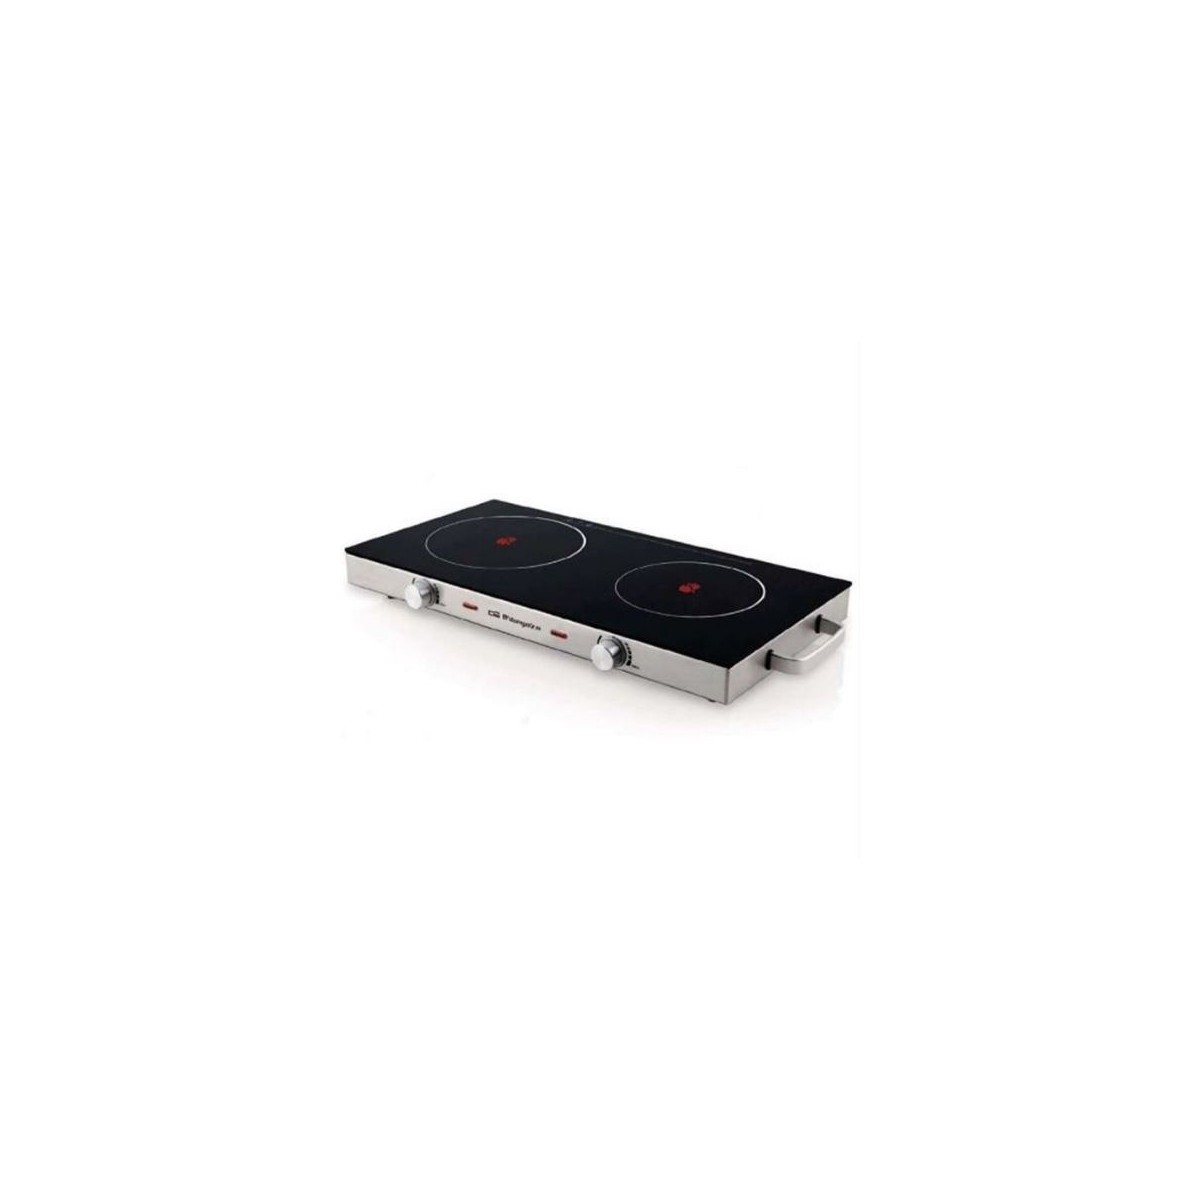 89,54 € - Vitroceramica portatil Orbegozo PCE6000